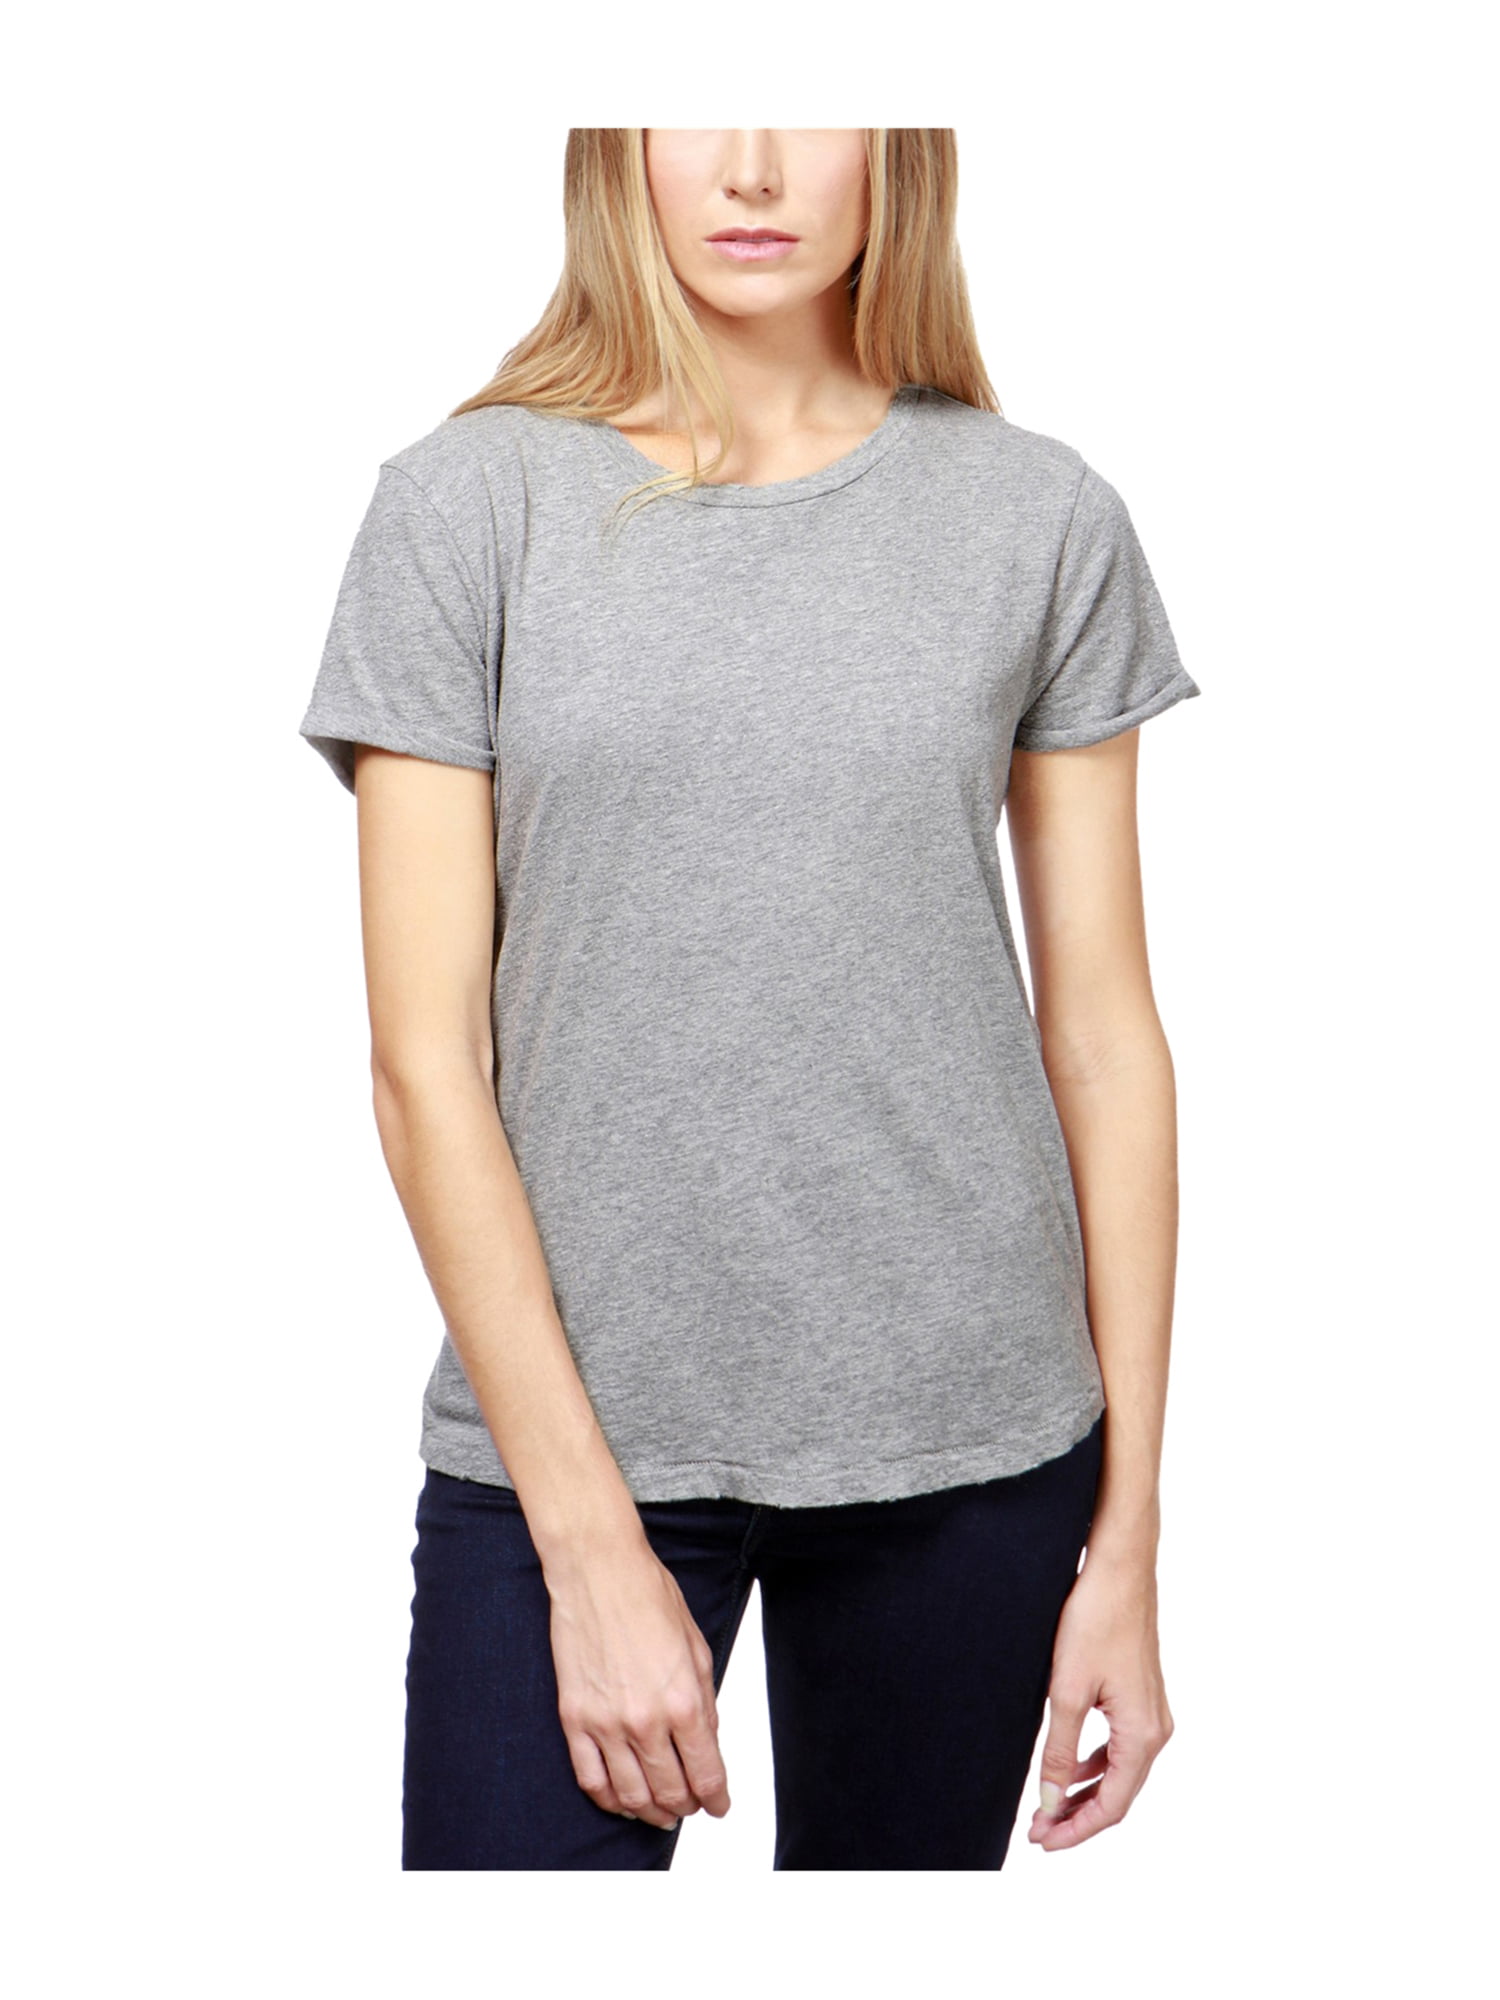 Lucky Brand - Lucky Brand Womens Textured Basic T-Shirt - Walmart.com ...